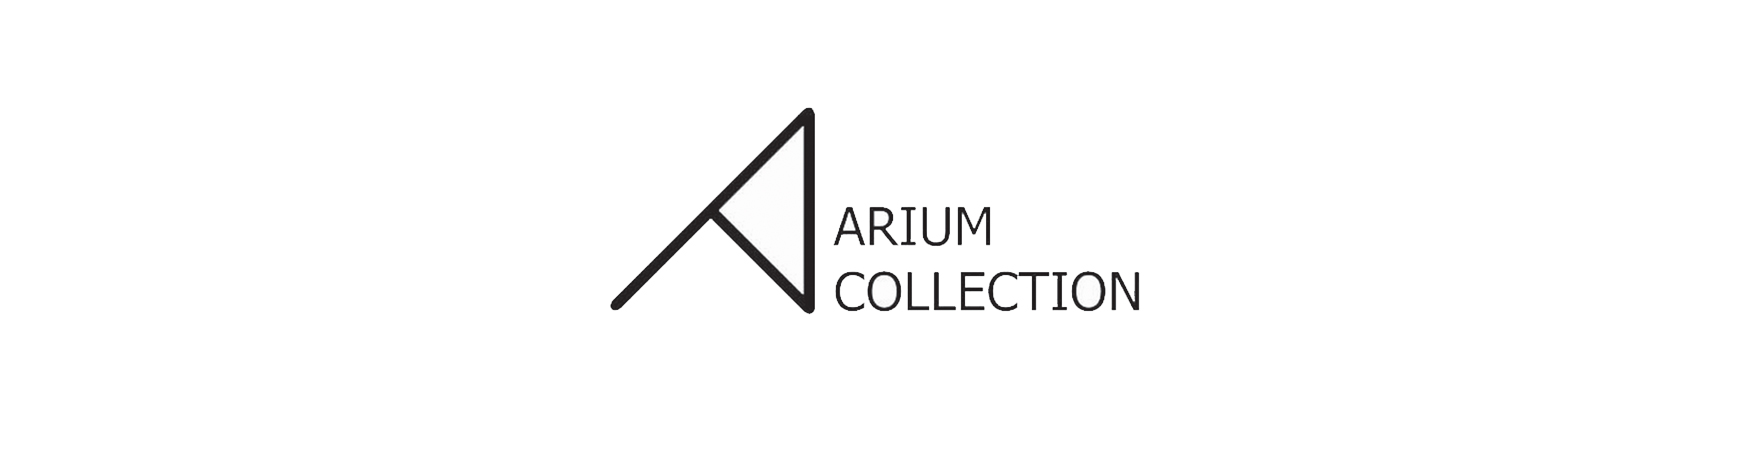 Arium Collection